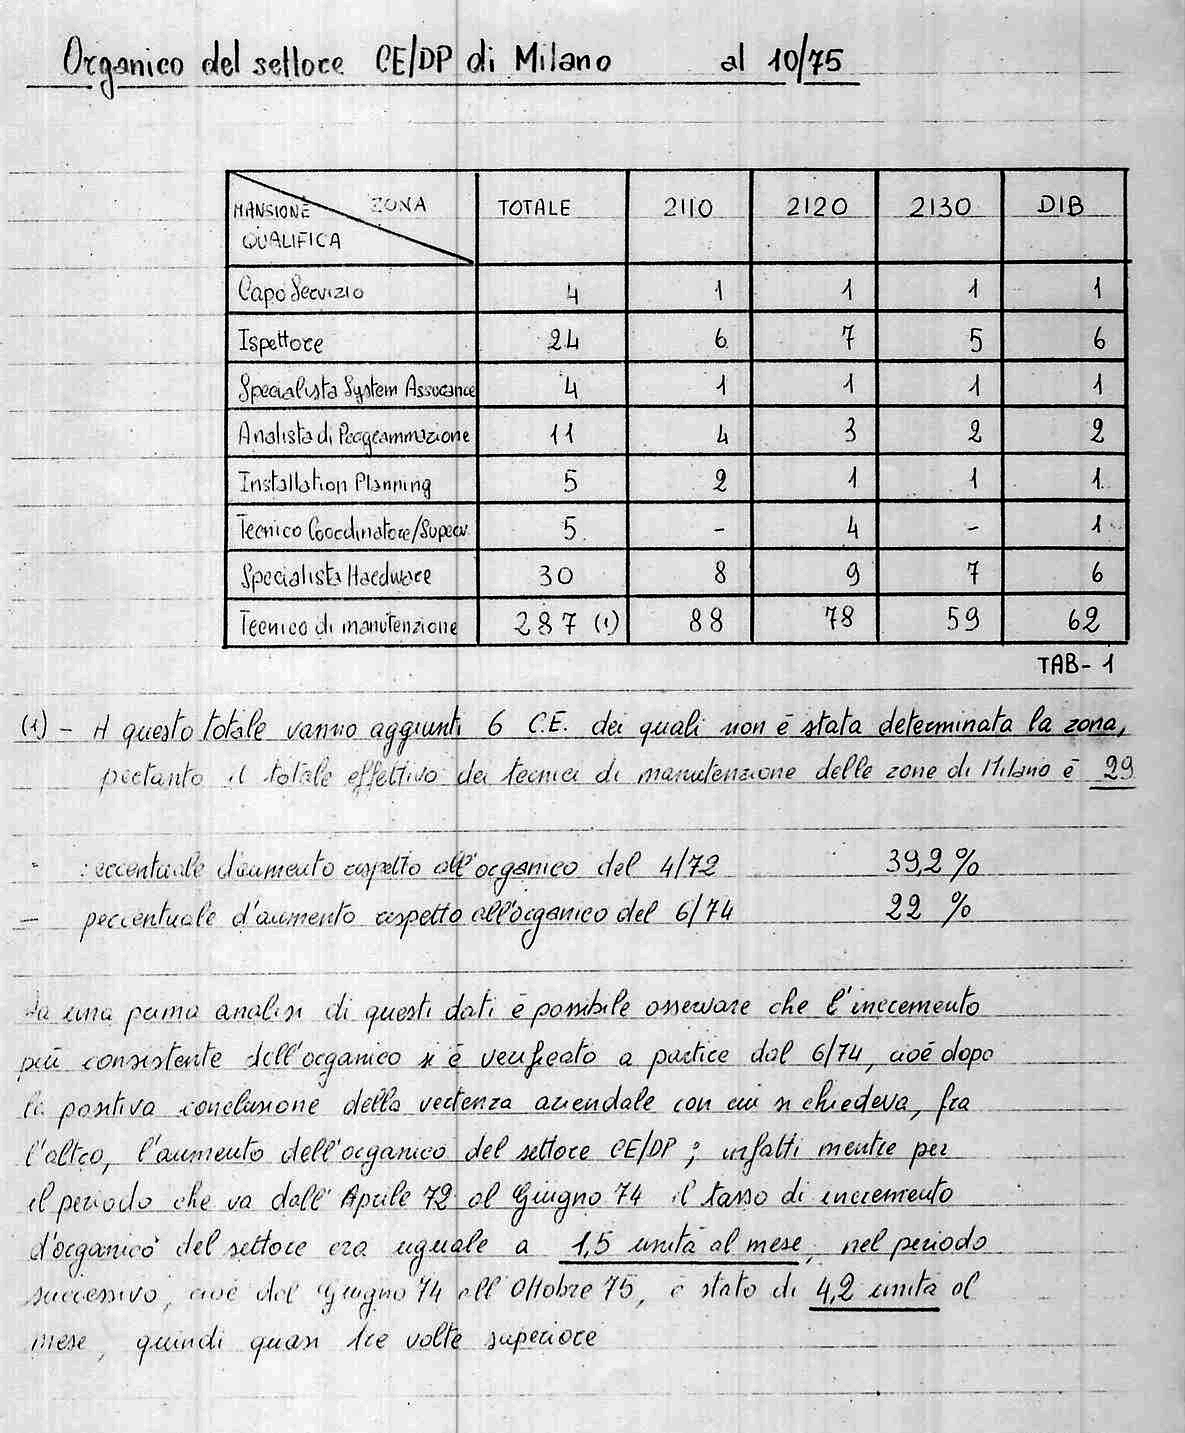 Organico del settore CE/DP di Milano 4/72 - 10/75 - a